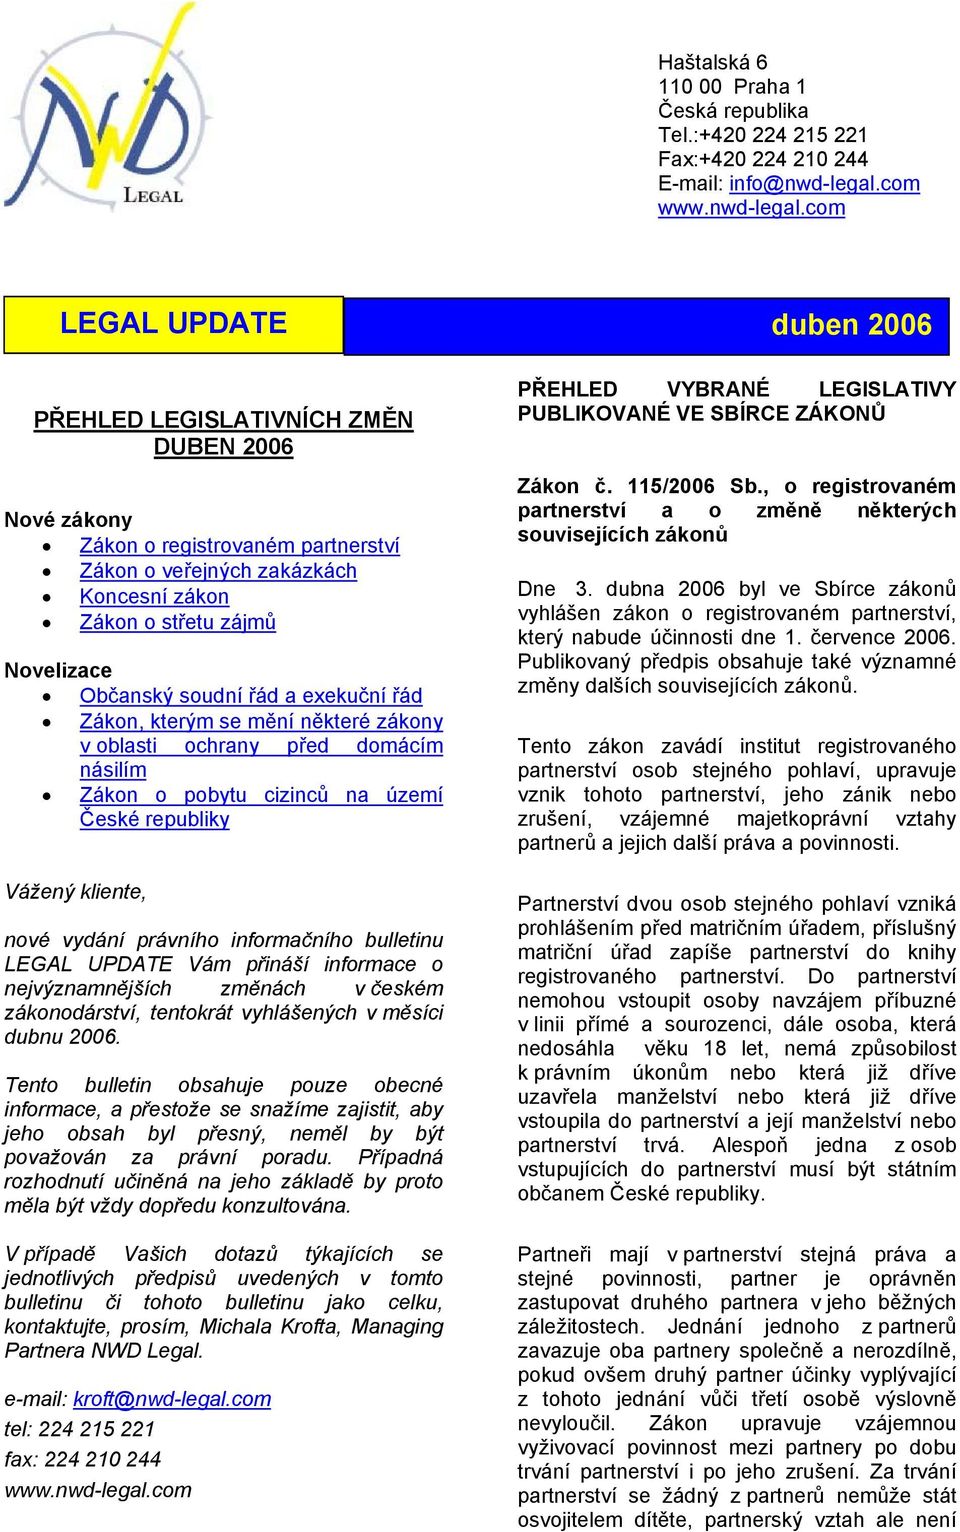 bulletinu LEGAL UPDATE Vám přináší informace o nejvýznamnějších změnách v českém zákonodárství, tentokrát vyhlášených v měsíci dubnu 2006.